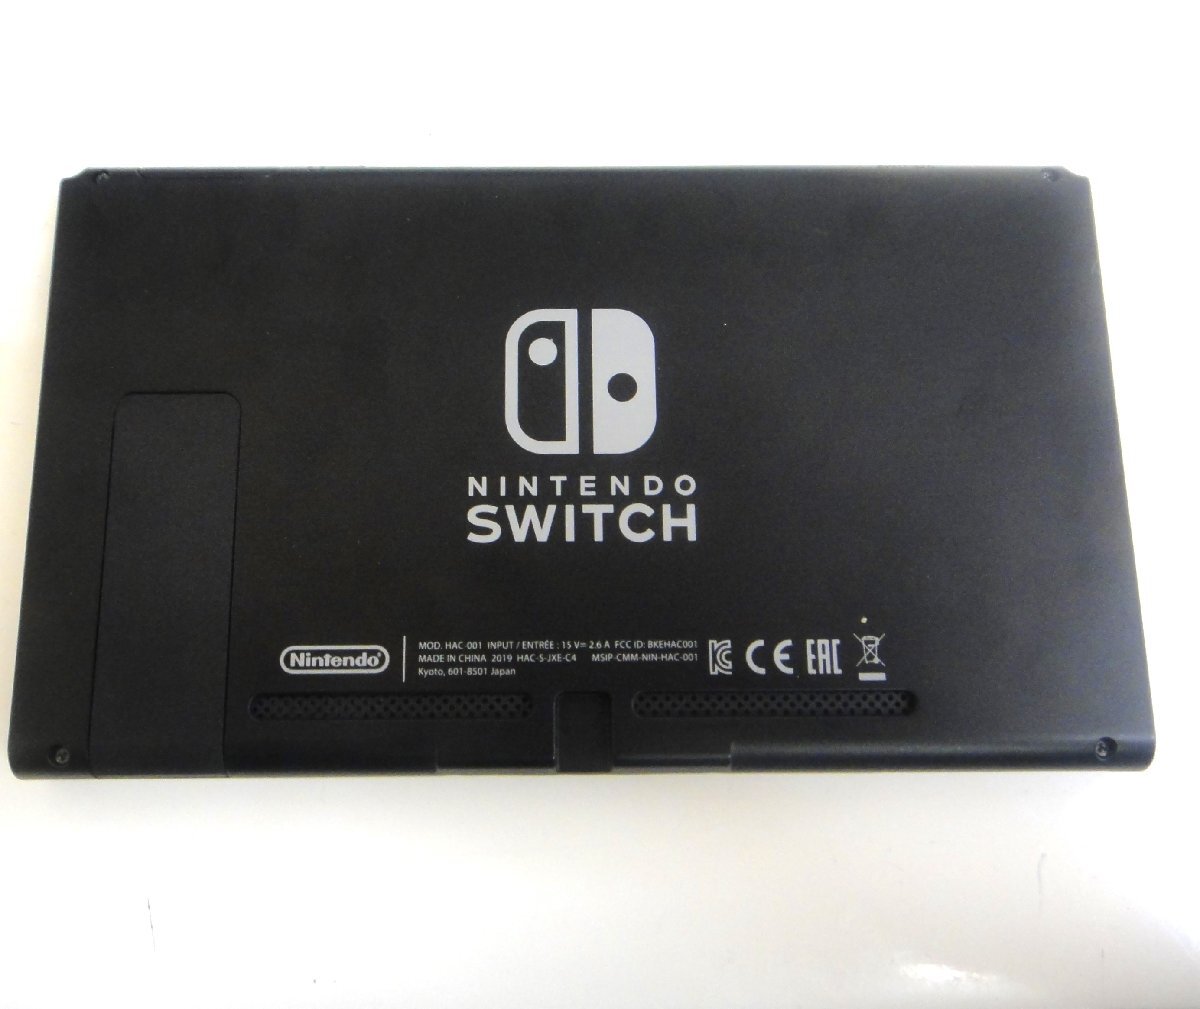  Takasaki магазин [ б/у товар ]4-63 nintendo Nintendo переключатель switch HAC-001 HDMI кабель отсутствует первый период . завершено рабочее состояние подтверждено 